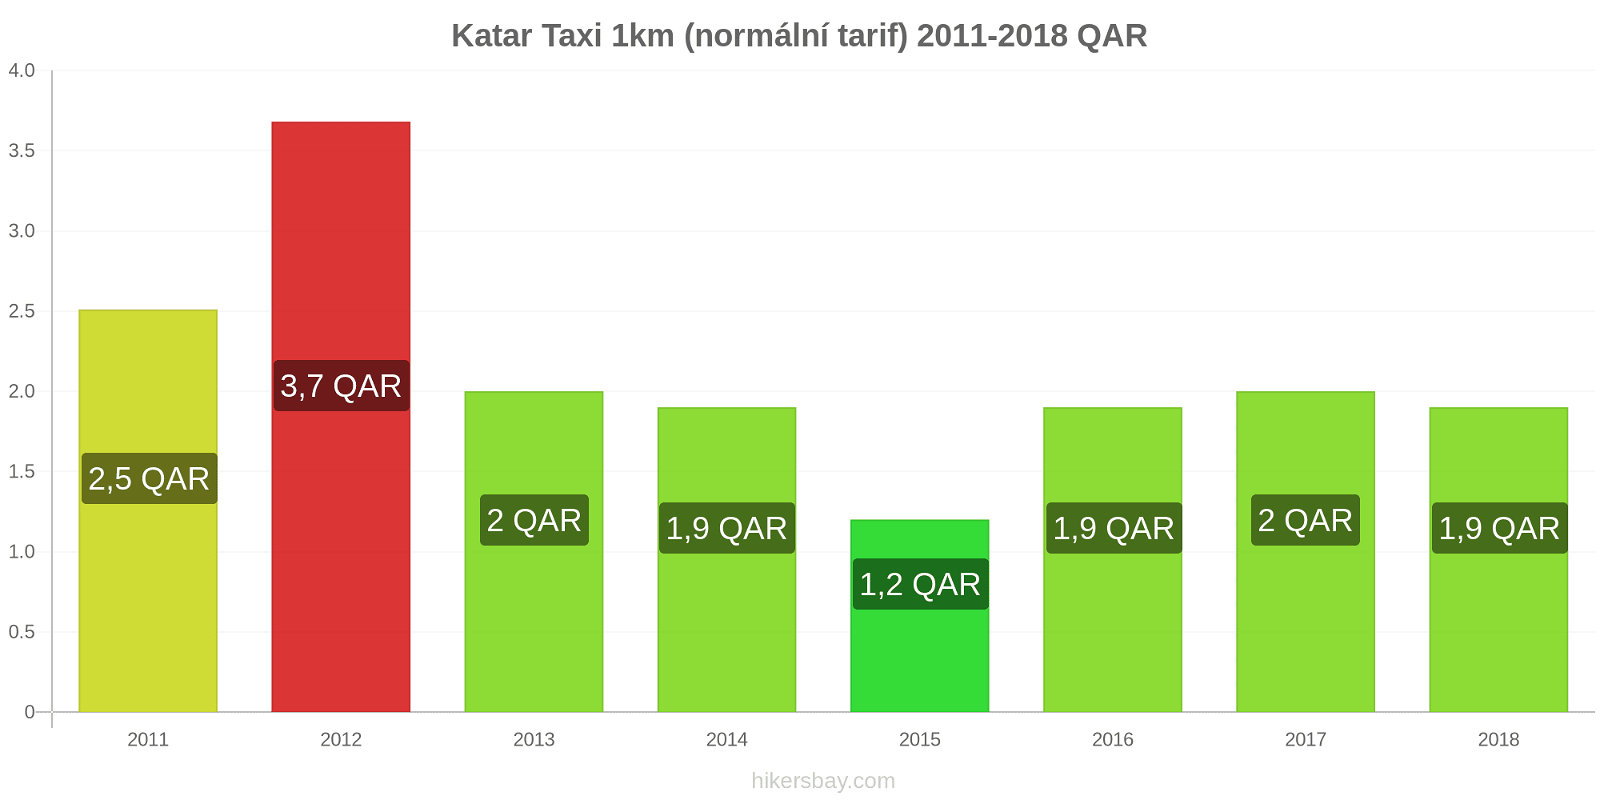 Katar změny cen Taxi 1km (normální tarif) hikersbay.com